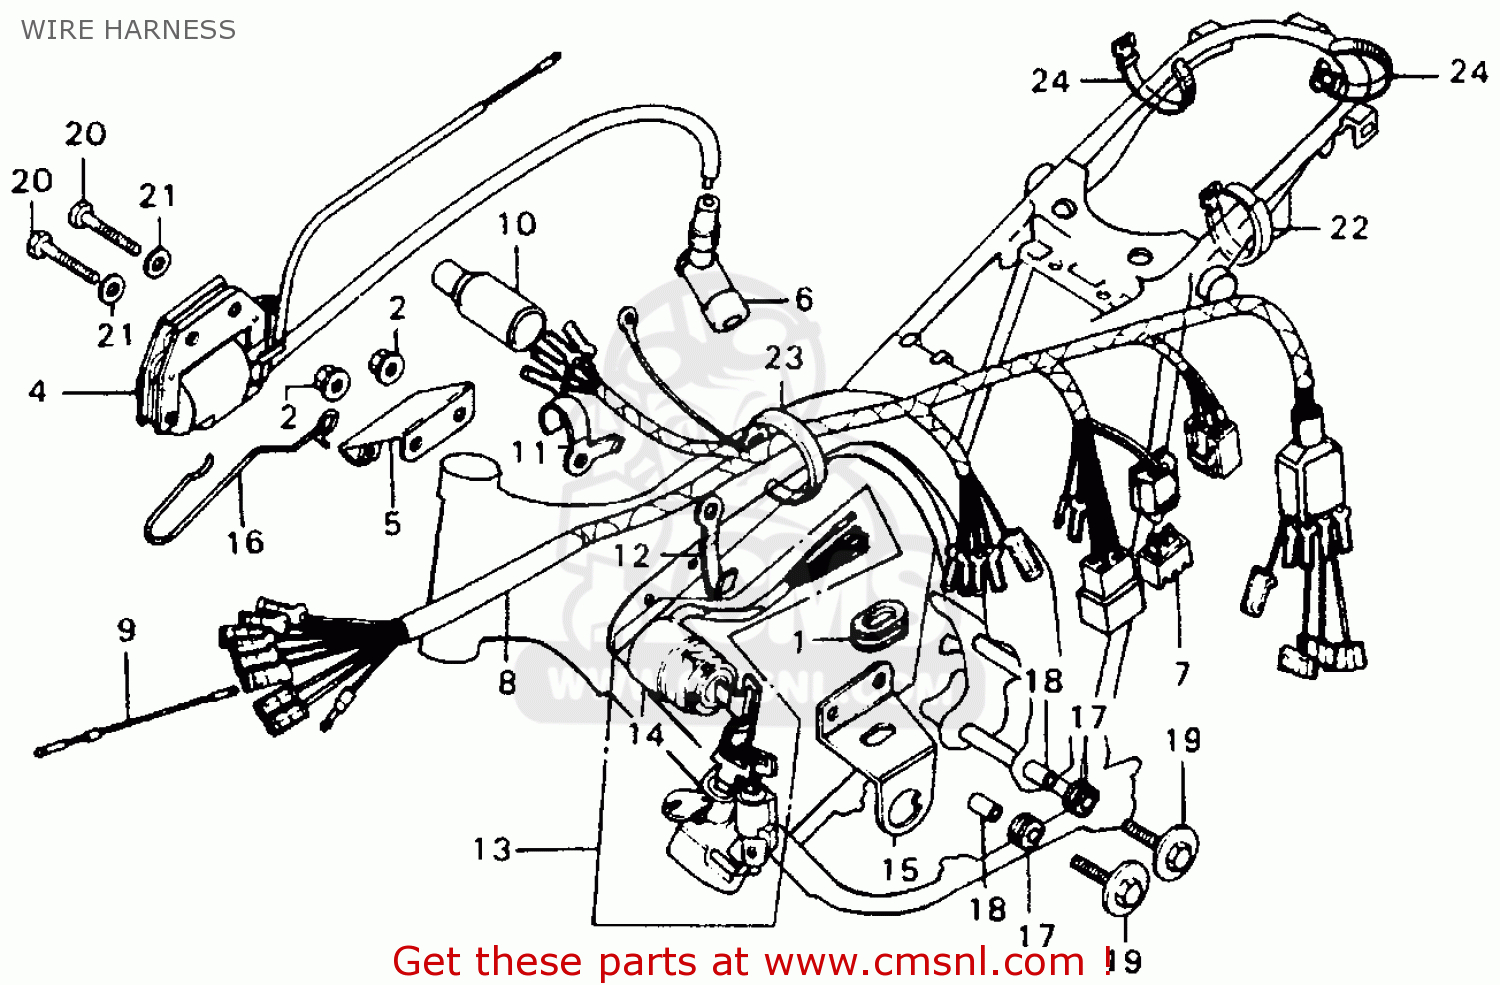 Honda Ruckus Wiring Harness | Best Wiring Library - Honda Ruckus Wiring Diagram